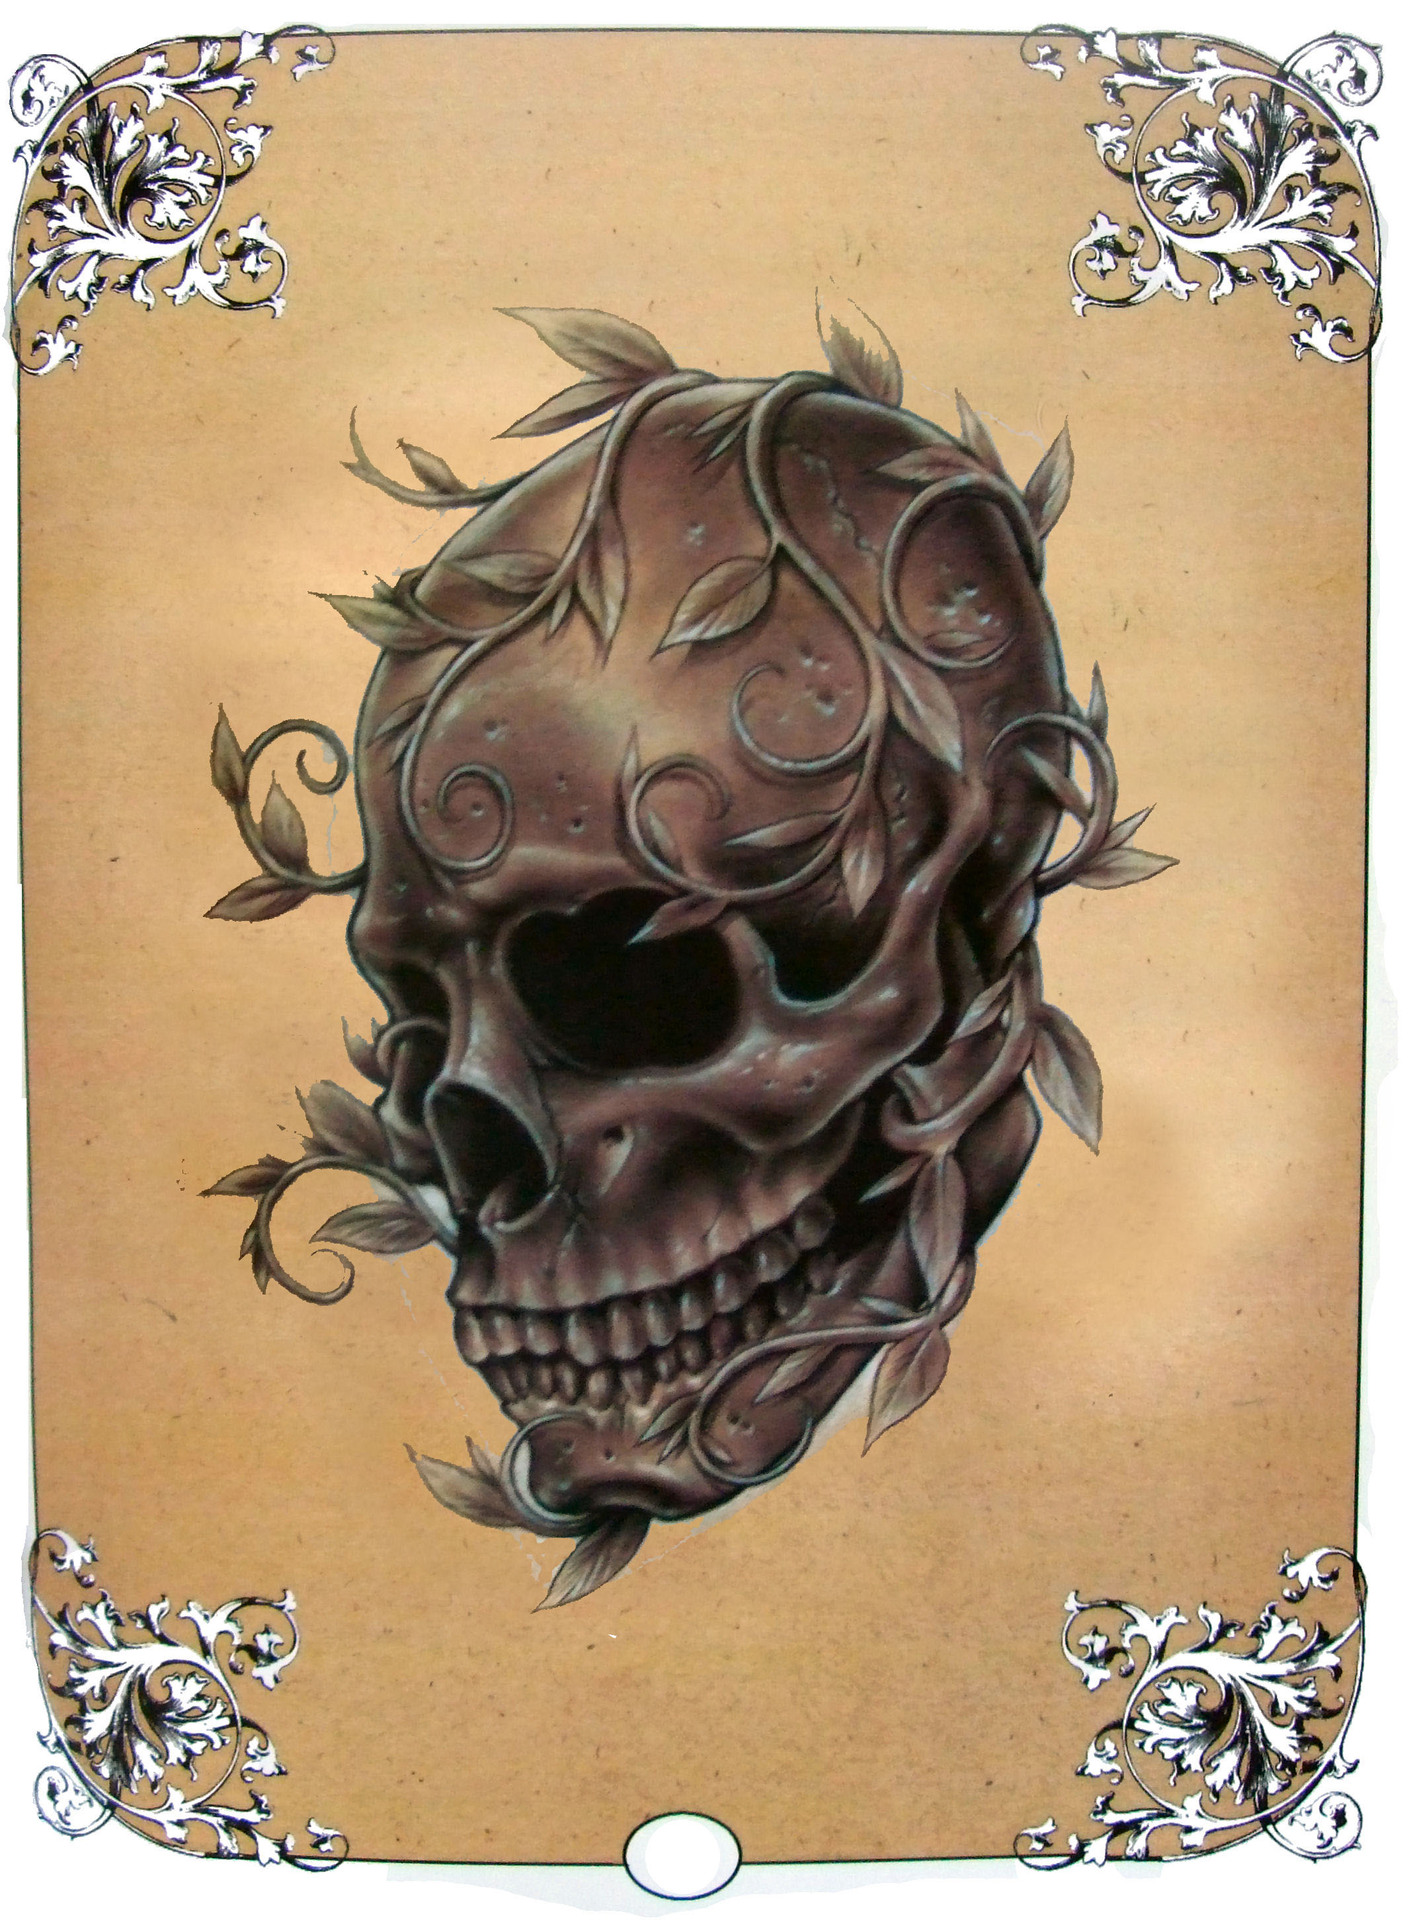 中龙纹身厂家直销死亡笔记纹身手稿图册 新手纹身骷髅